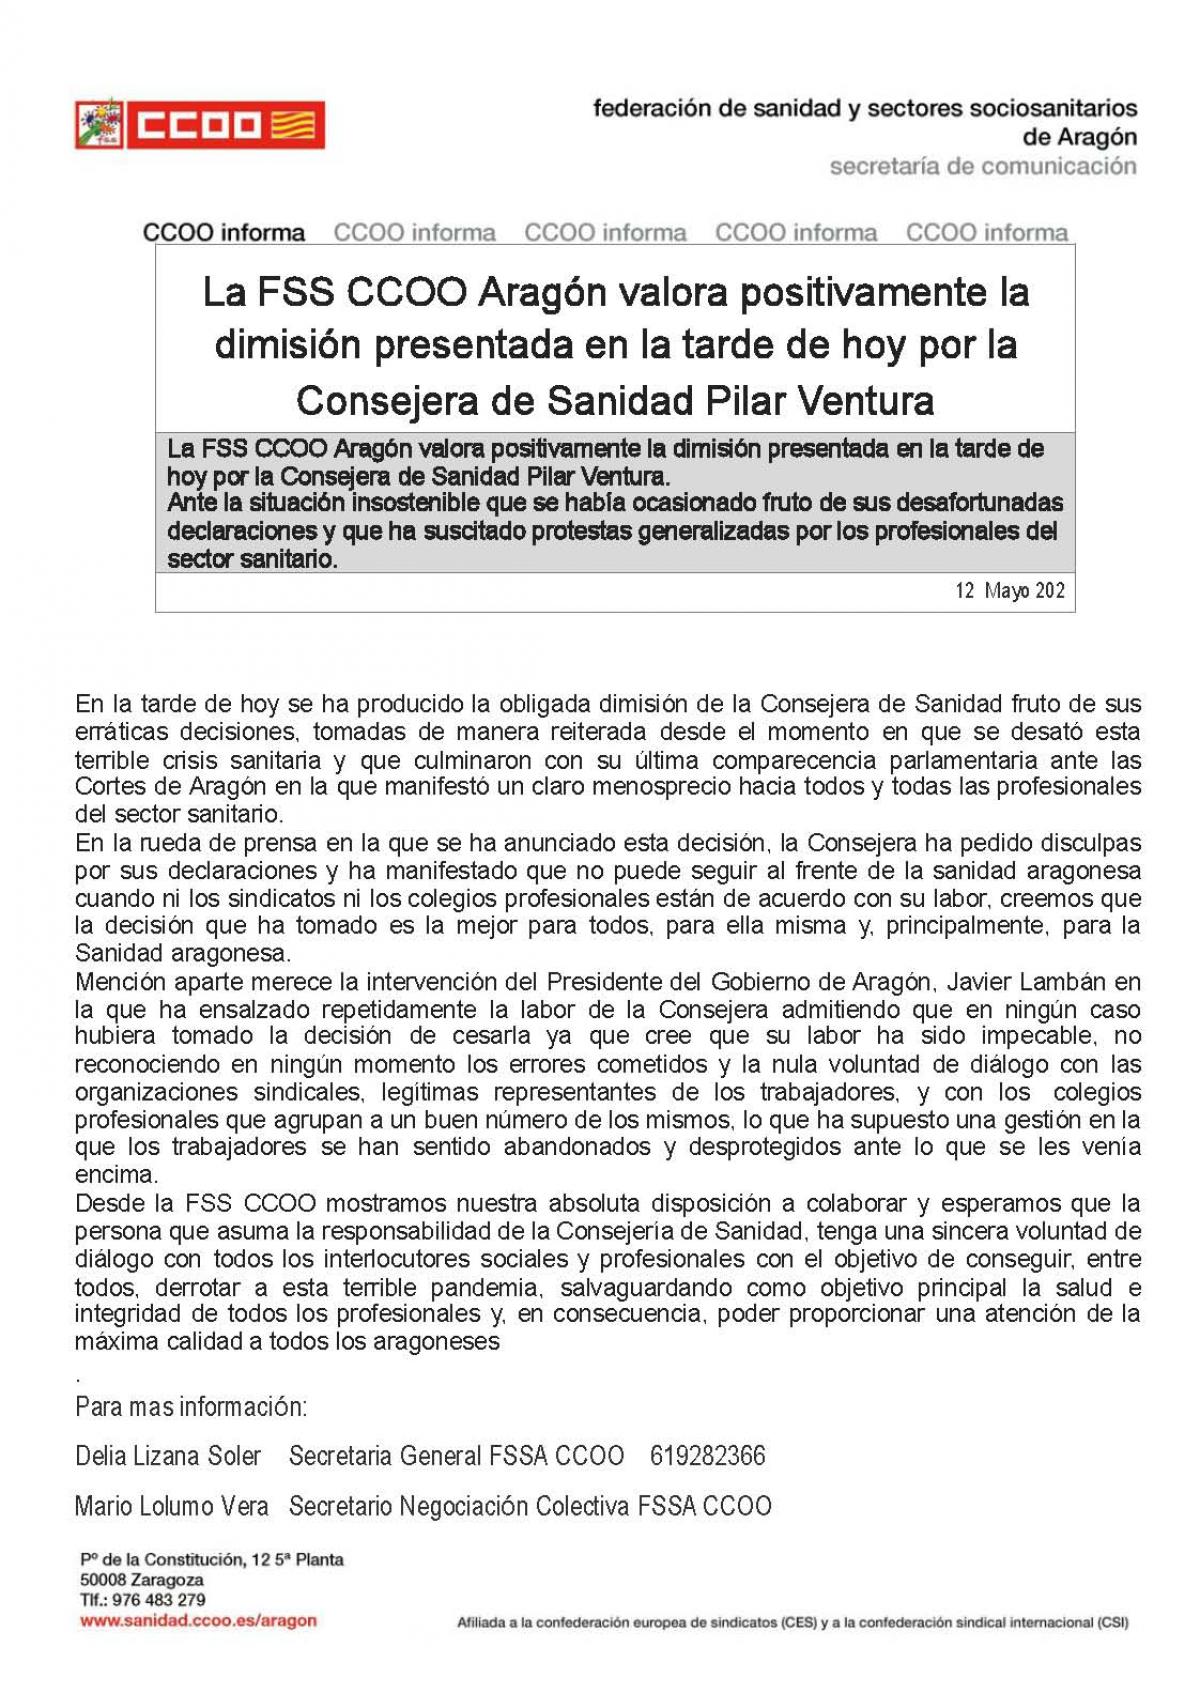 Nota de prensa de la FSS CCOO Aragn en relacin con la dimisin de la Consejera de Sanidad Pilar Ventura